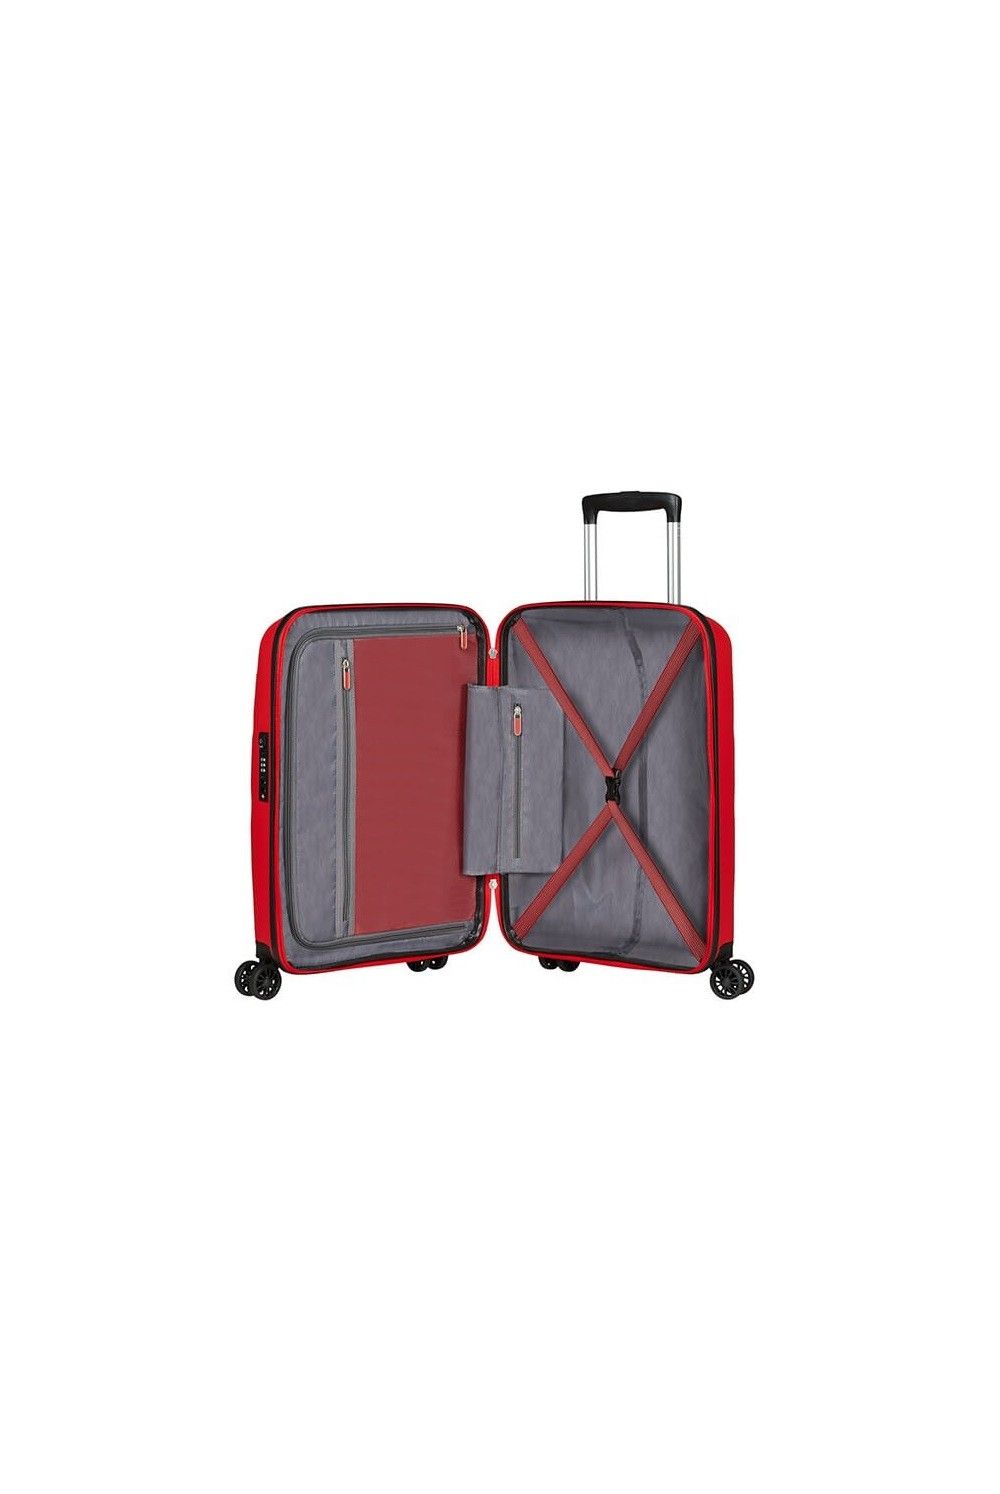 American Tourister Bon Air Dlx 55 4 wheel hand luggage